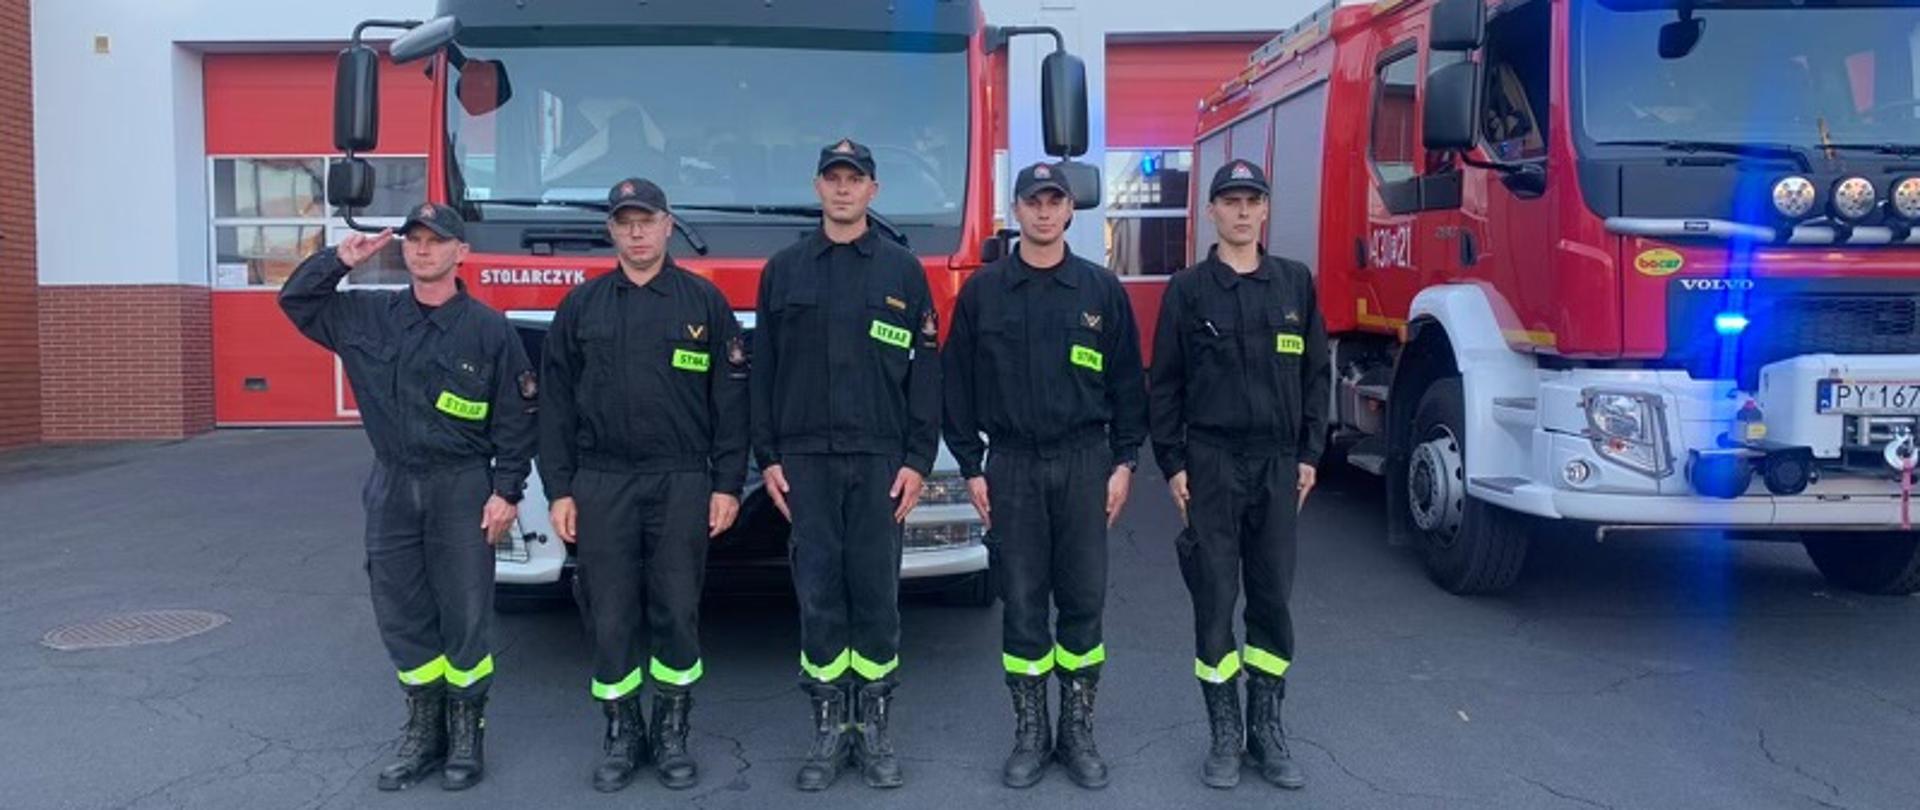 5 strażaków stoi w szeregu w pozycji na baczność. Jeden z nich oddaje honor poprzez salutowanie. W tle dwa wozy strażackie z włączonymi sygnałami świetlnymi.